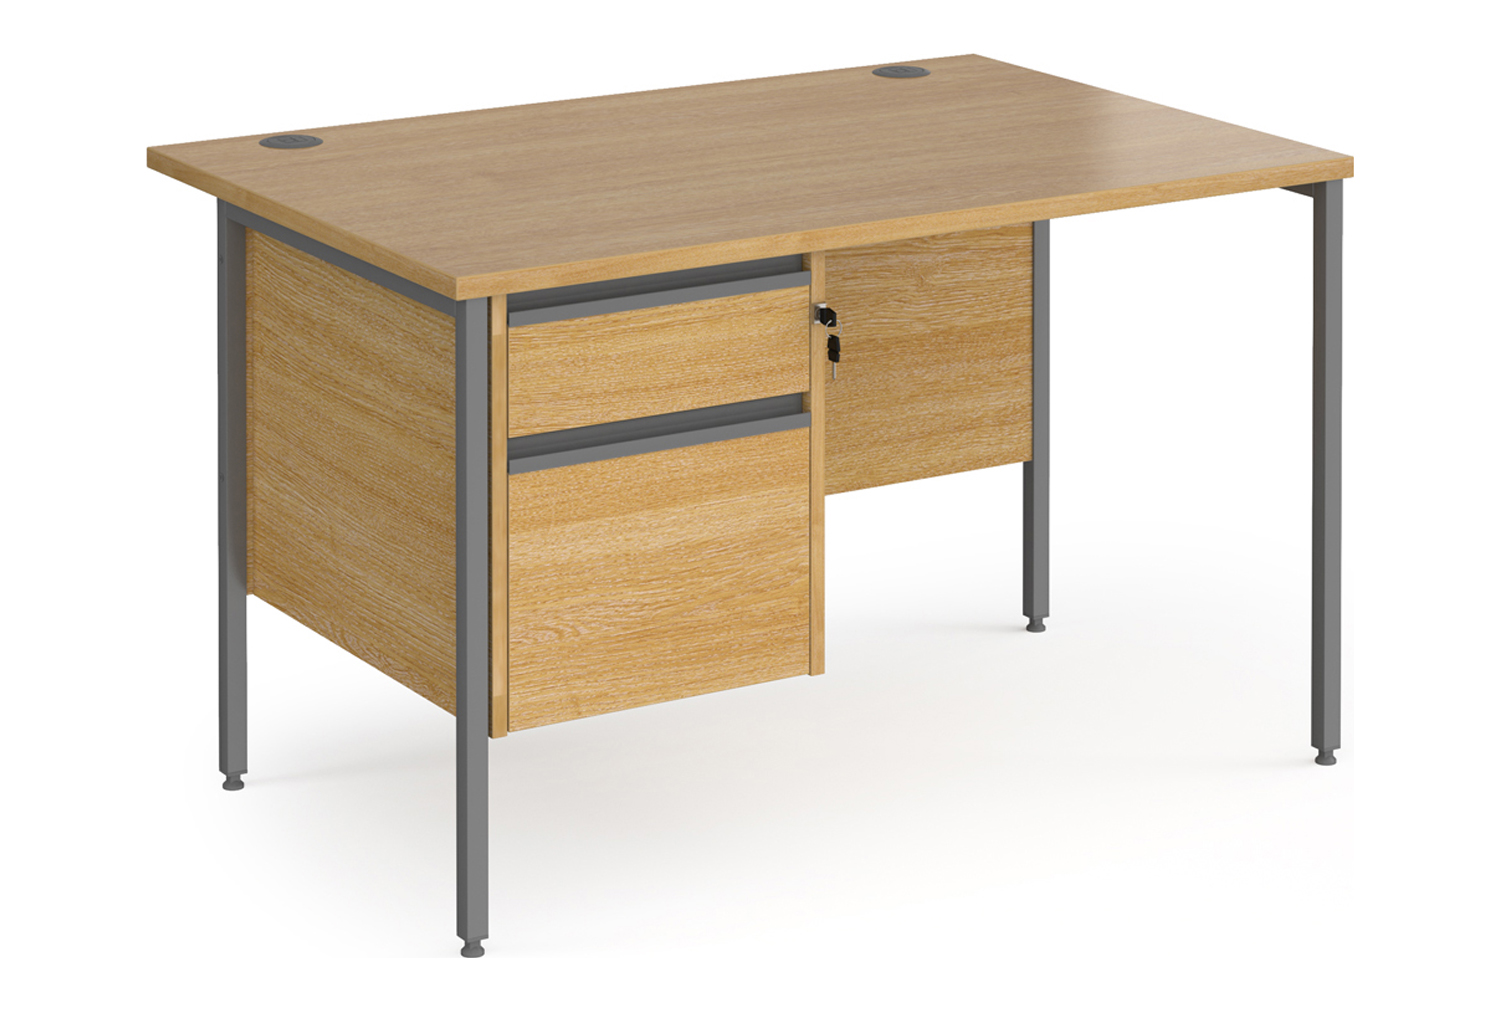 Value Line Classic+ Rectangular H-Leg Office Desk 2 Drawers (Graphite Leg), 120wx80dx73h (cm), Oak, Fully Installed